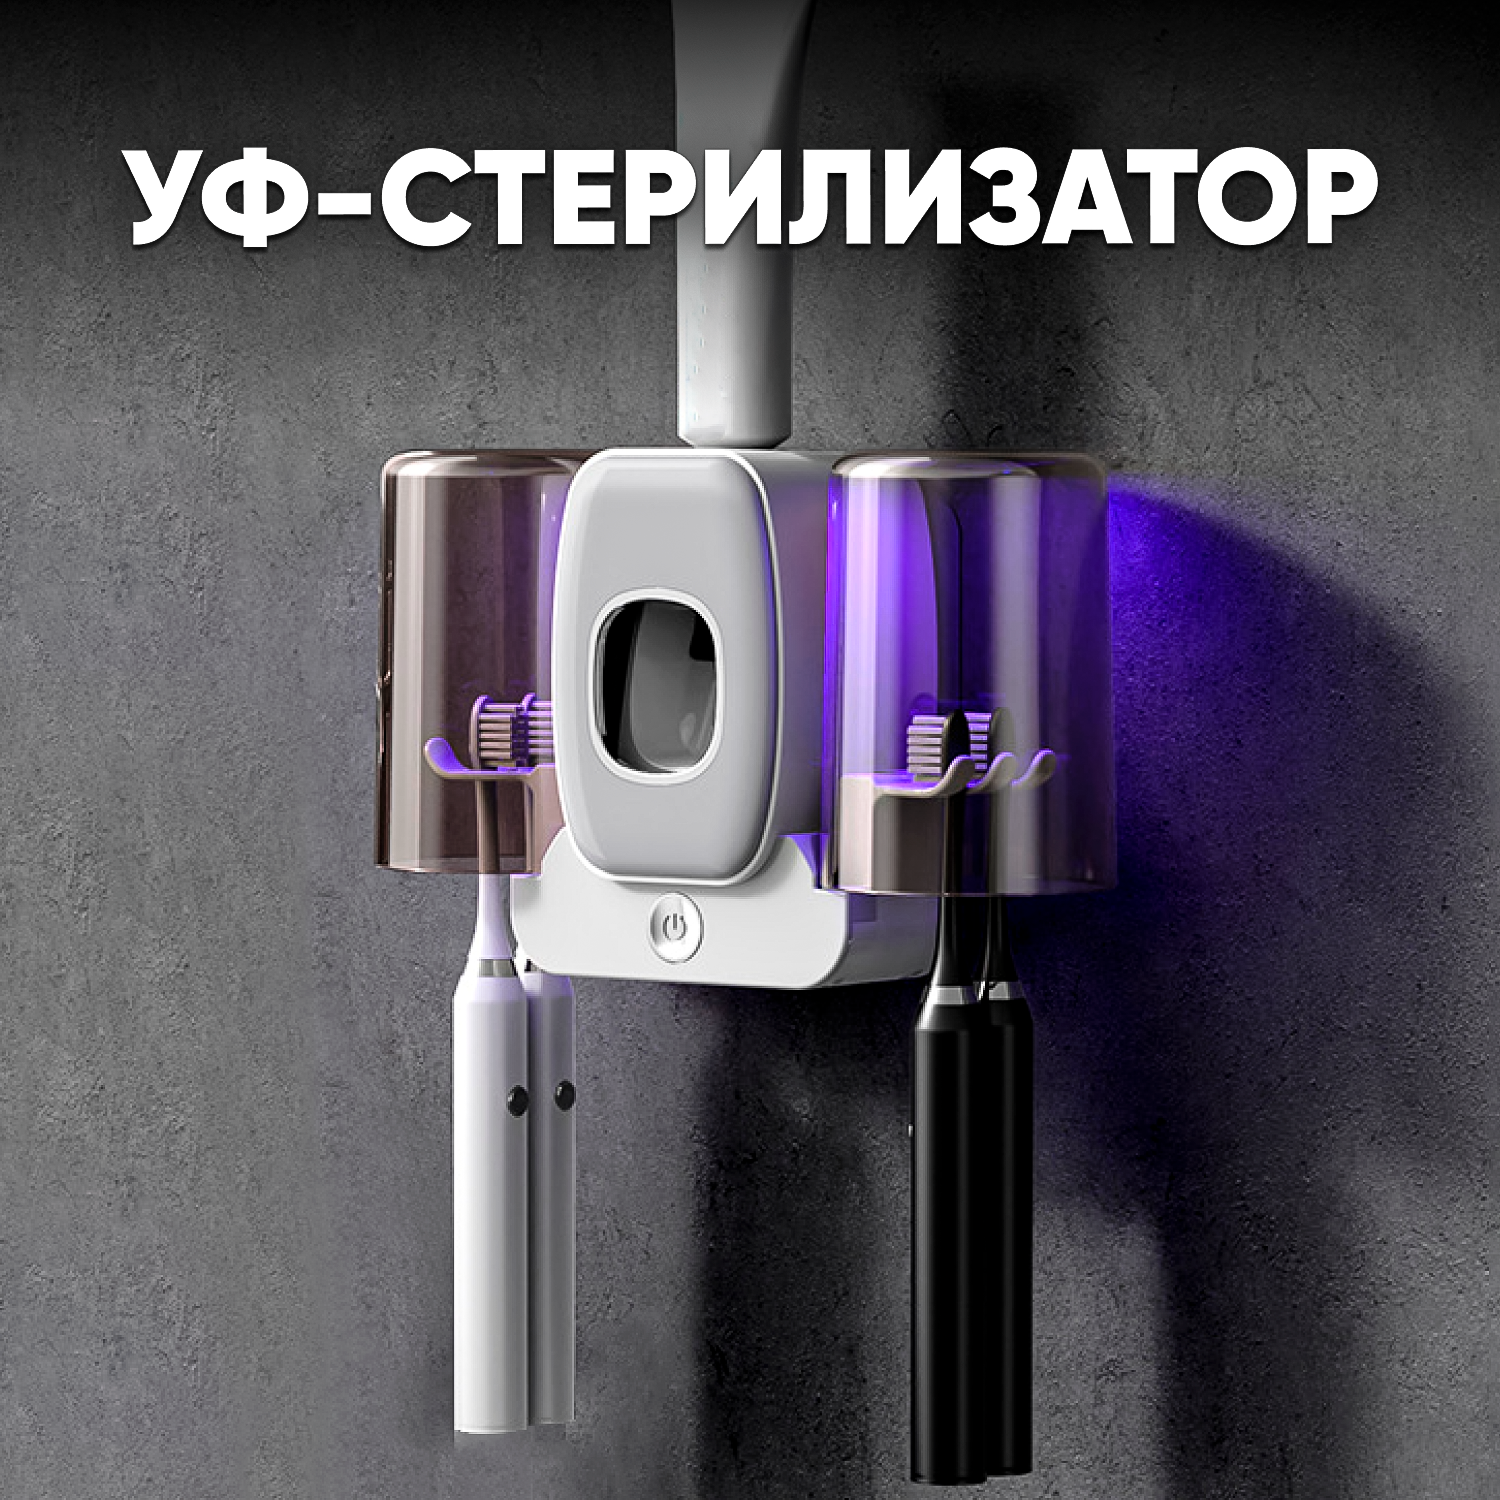 Дозаторы для ванной комнаты oqqi уф стерилизатор для зубных щеток - фото 1